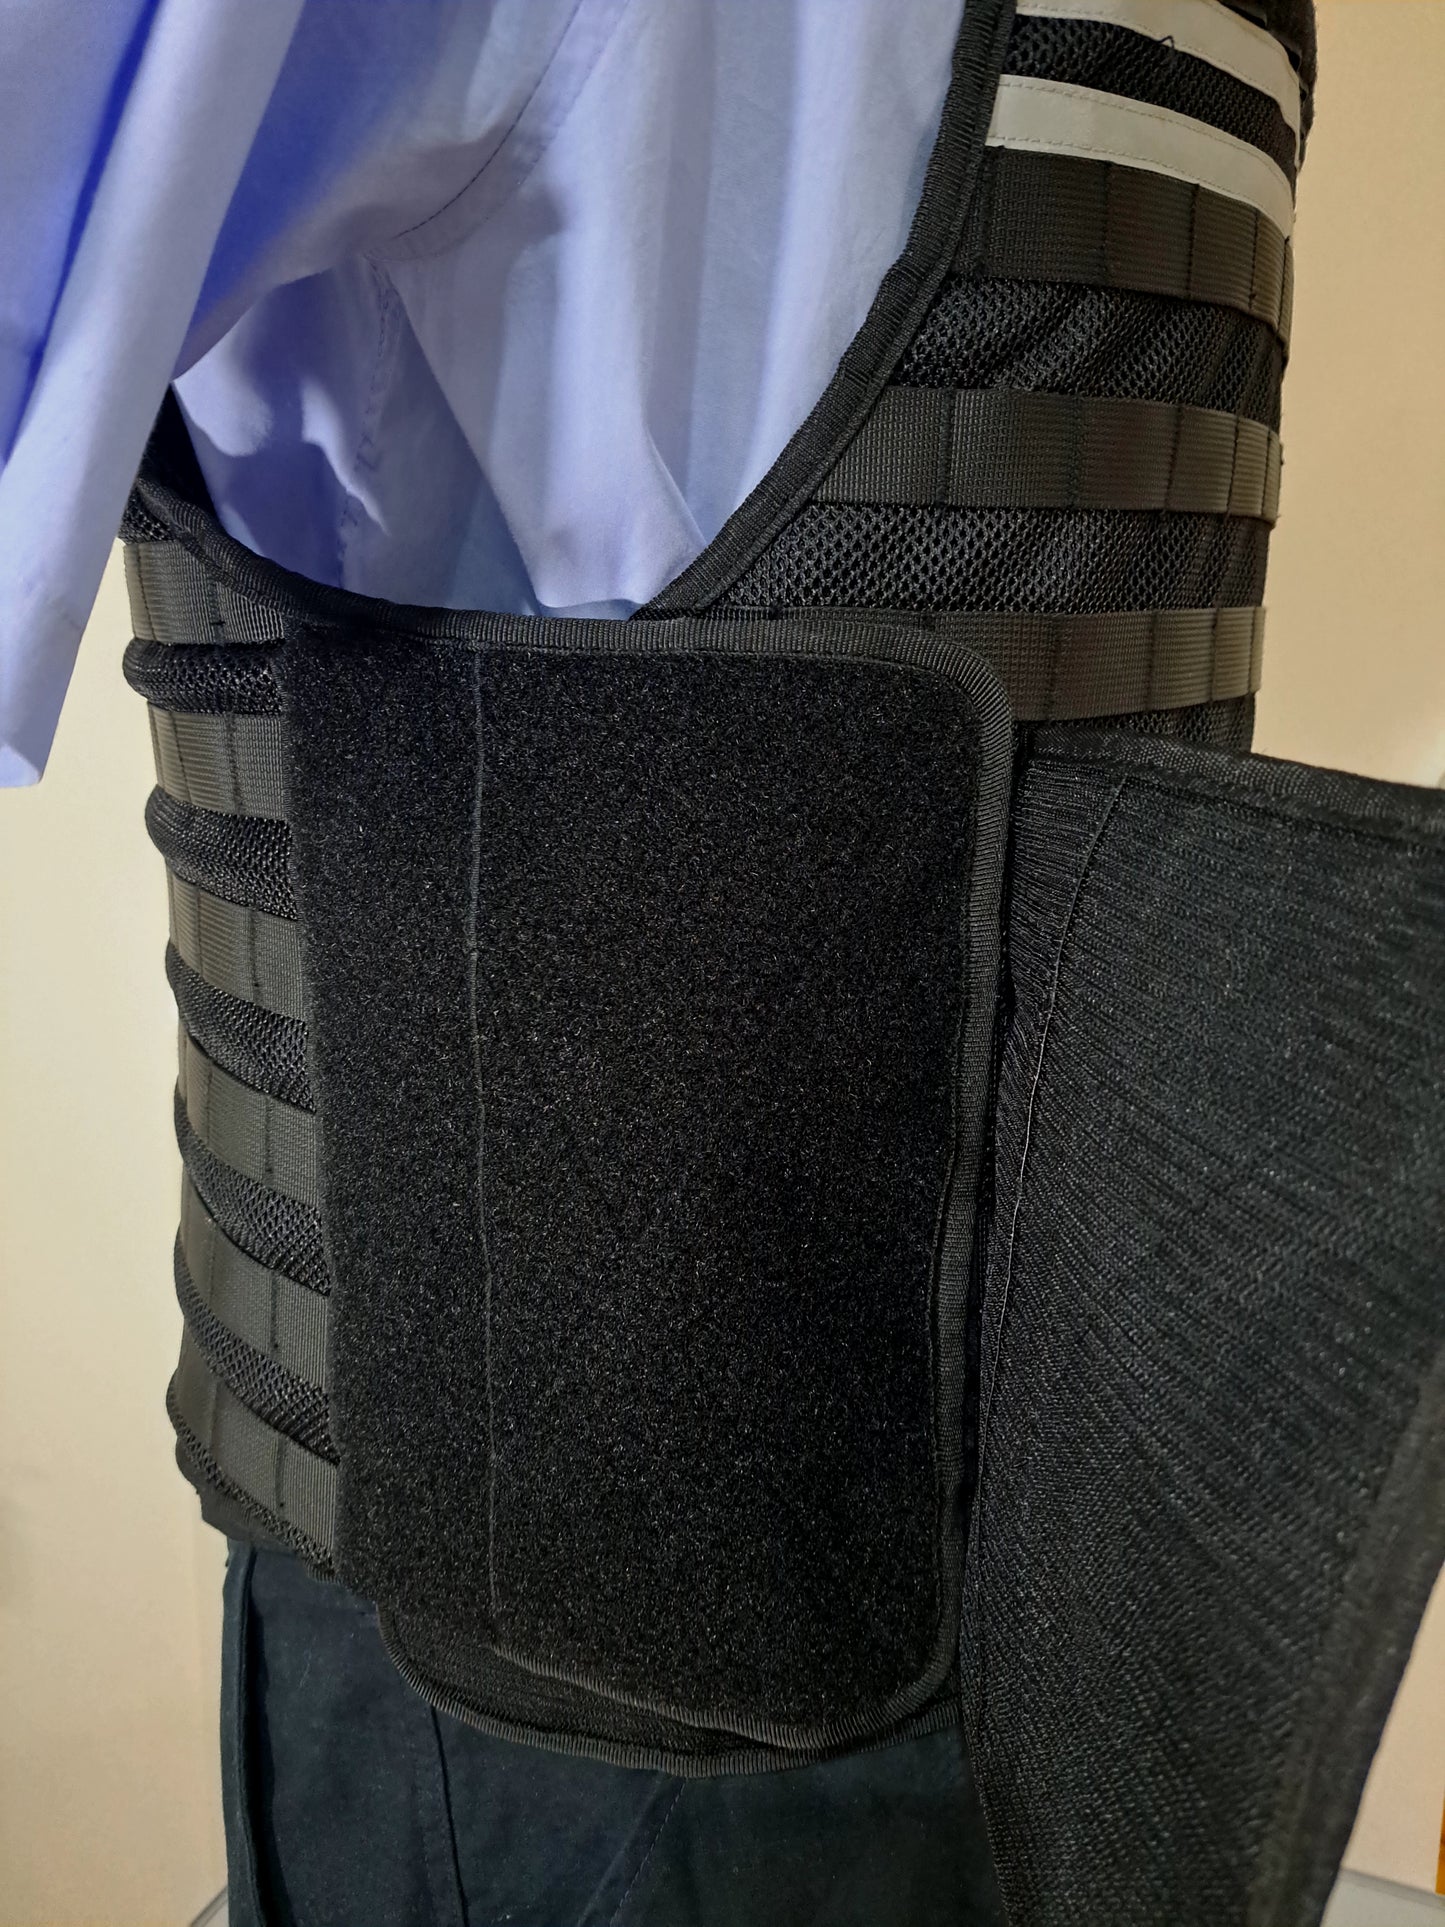 DEFENDER-3 The Latest Design Defender Stab Protection Vest